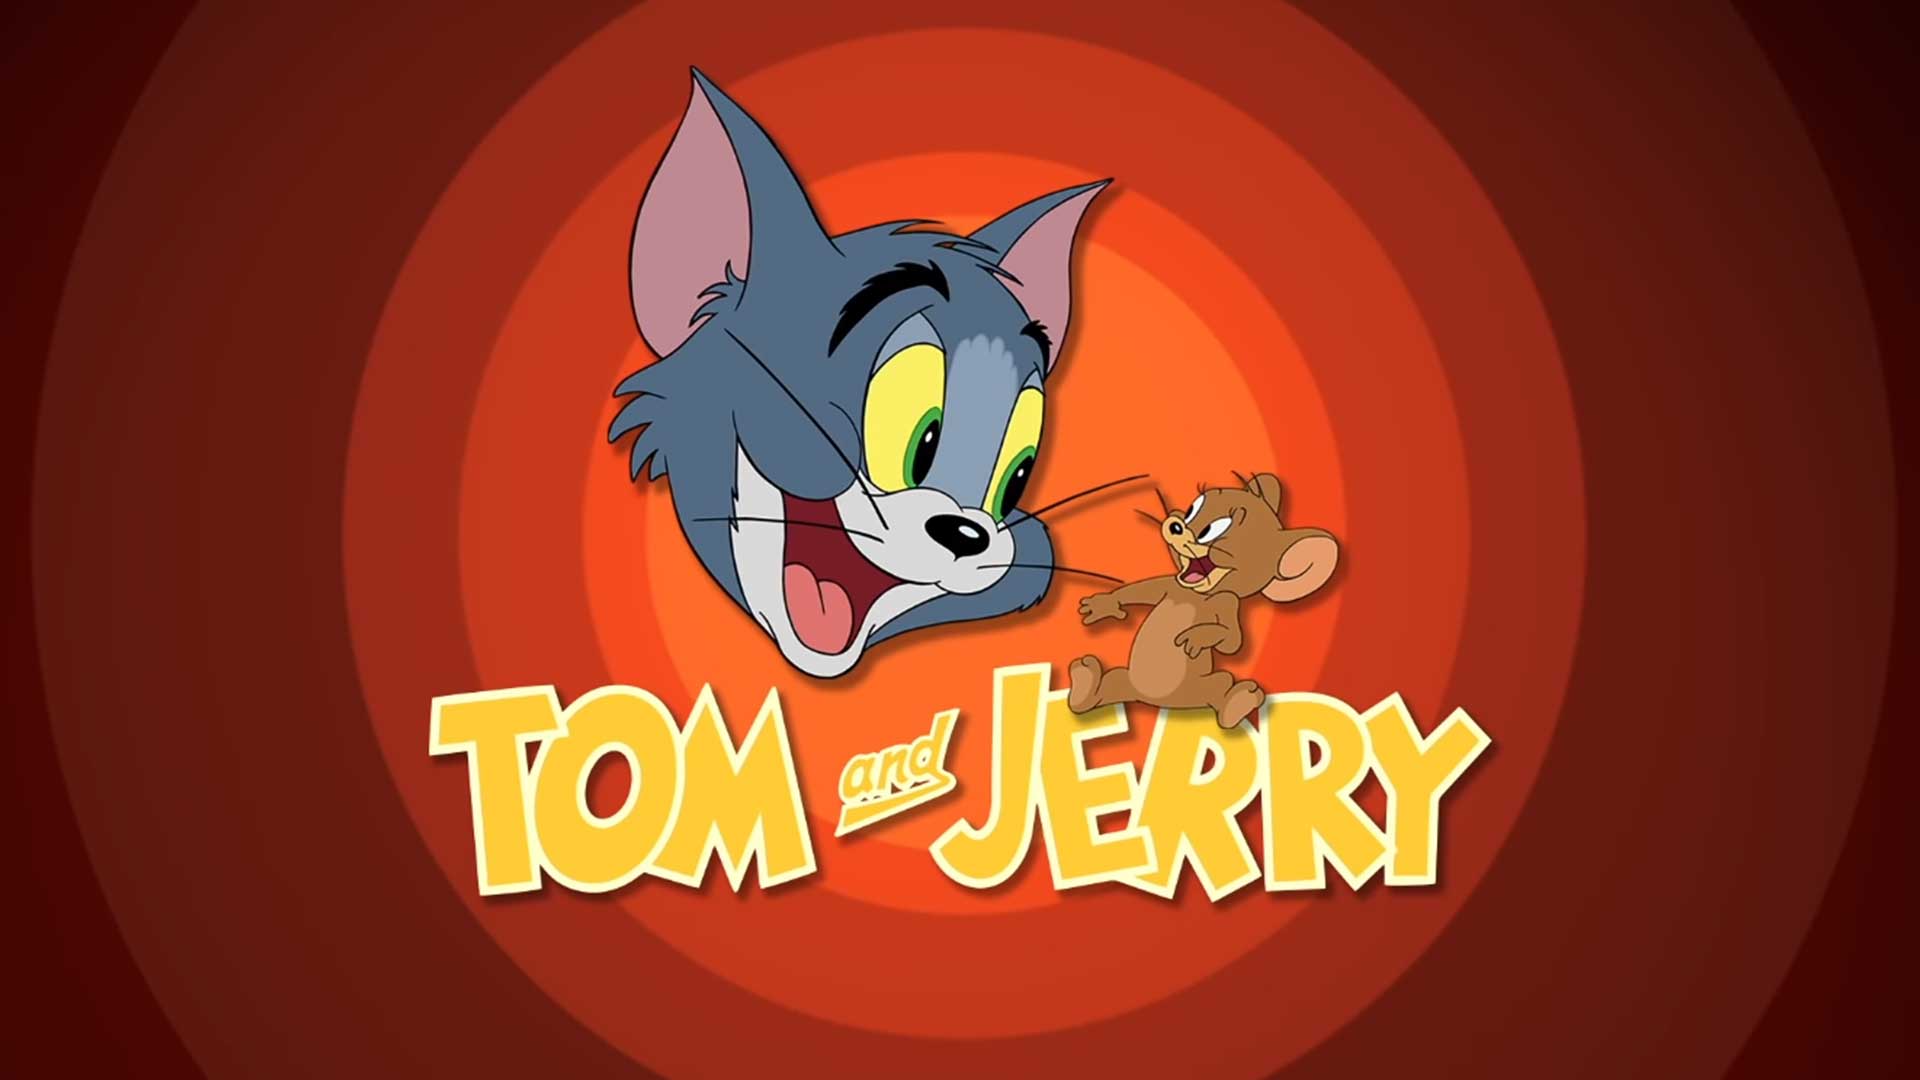 Том и Джерри – 76 серия «Это мой щеночек!» / Tom and Jerry